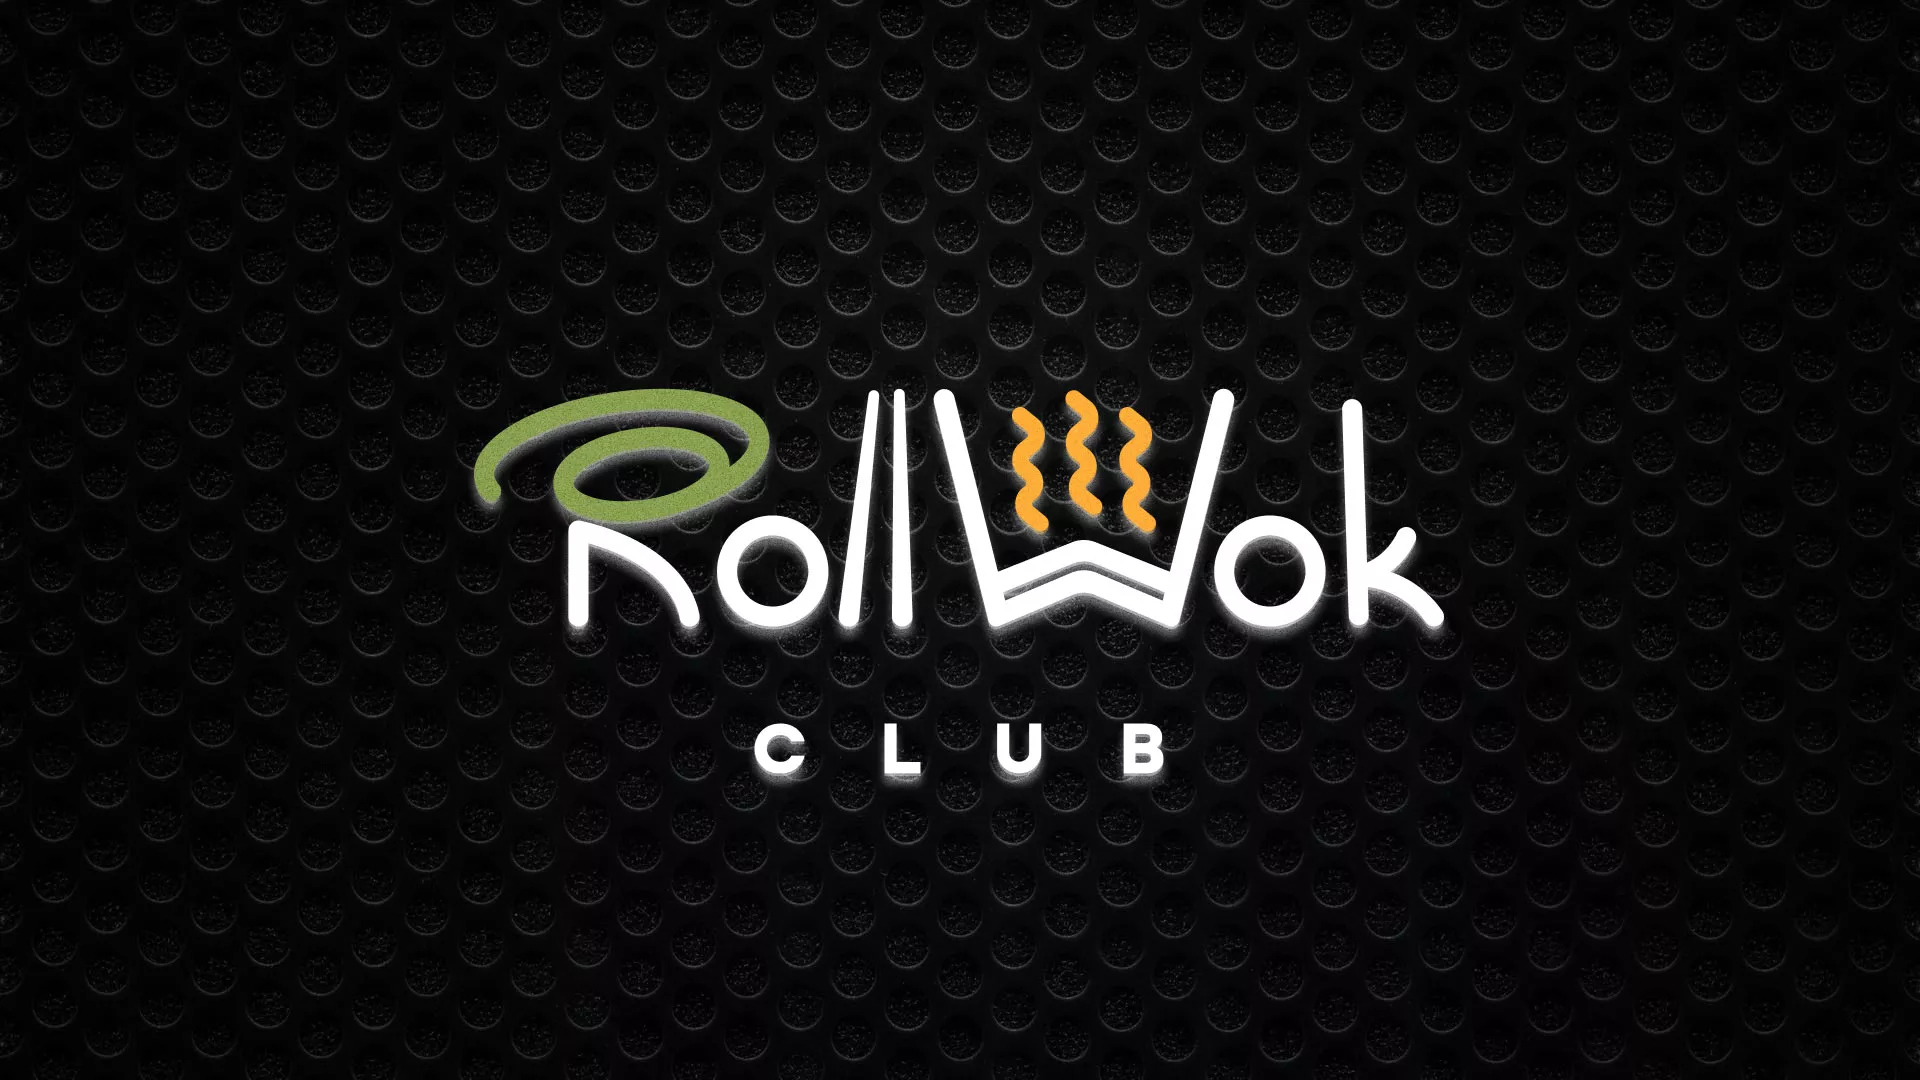 Брендирование торговых точек суши-бара «Roll Wok Club» в Калтане